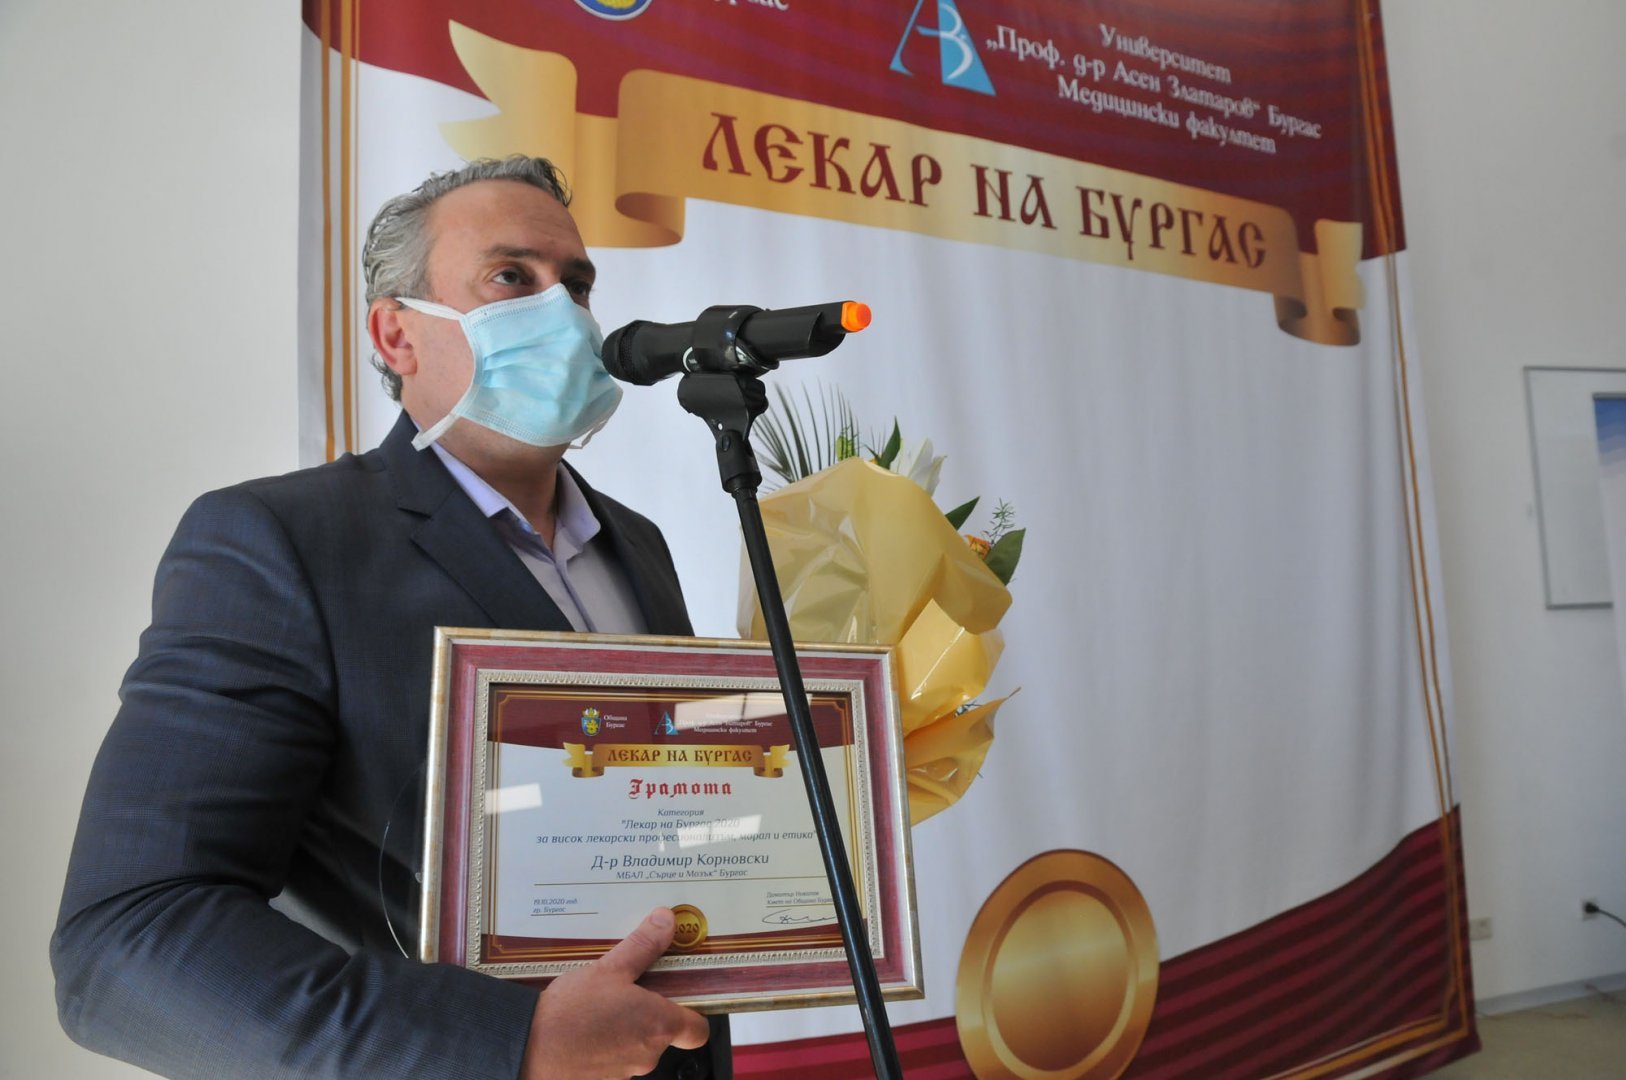 Д-р Владимир Кордовски е първият носител на приза Лекар на Бургас. Снимка Архив Черноморие-бг